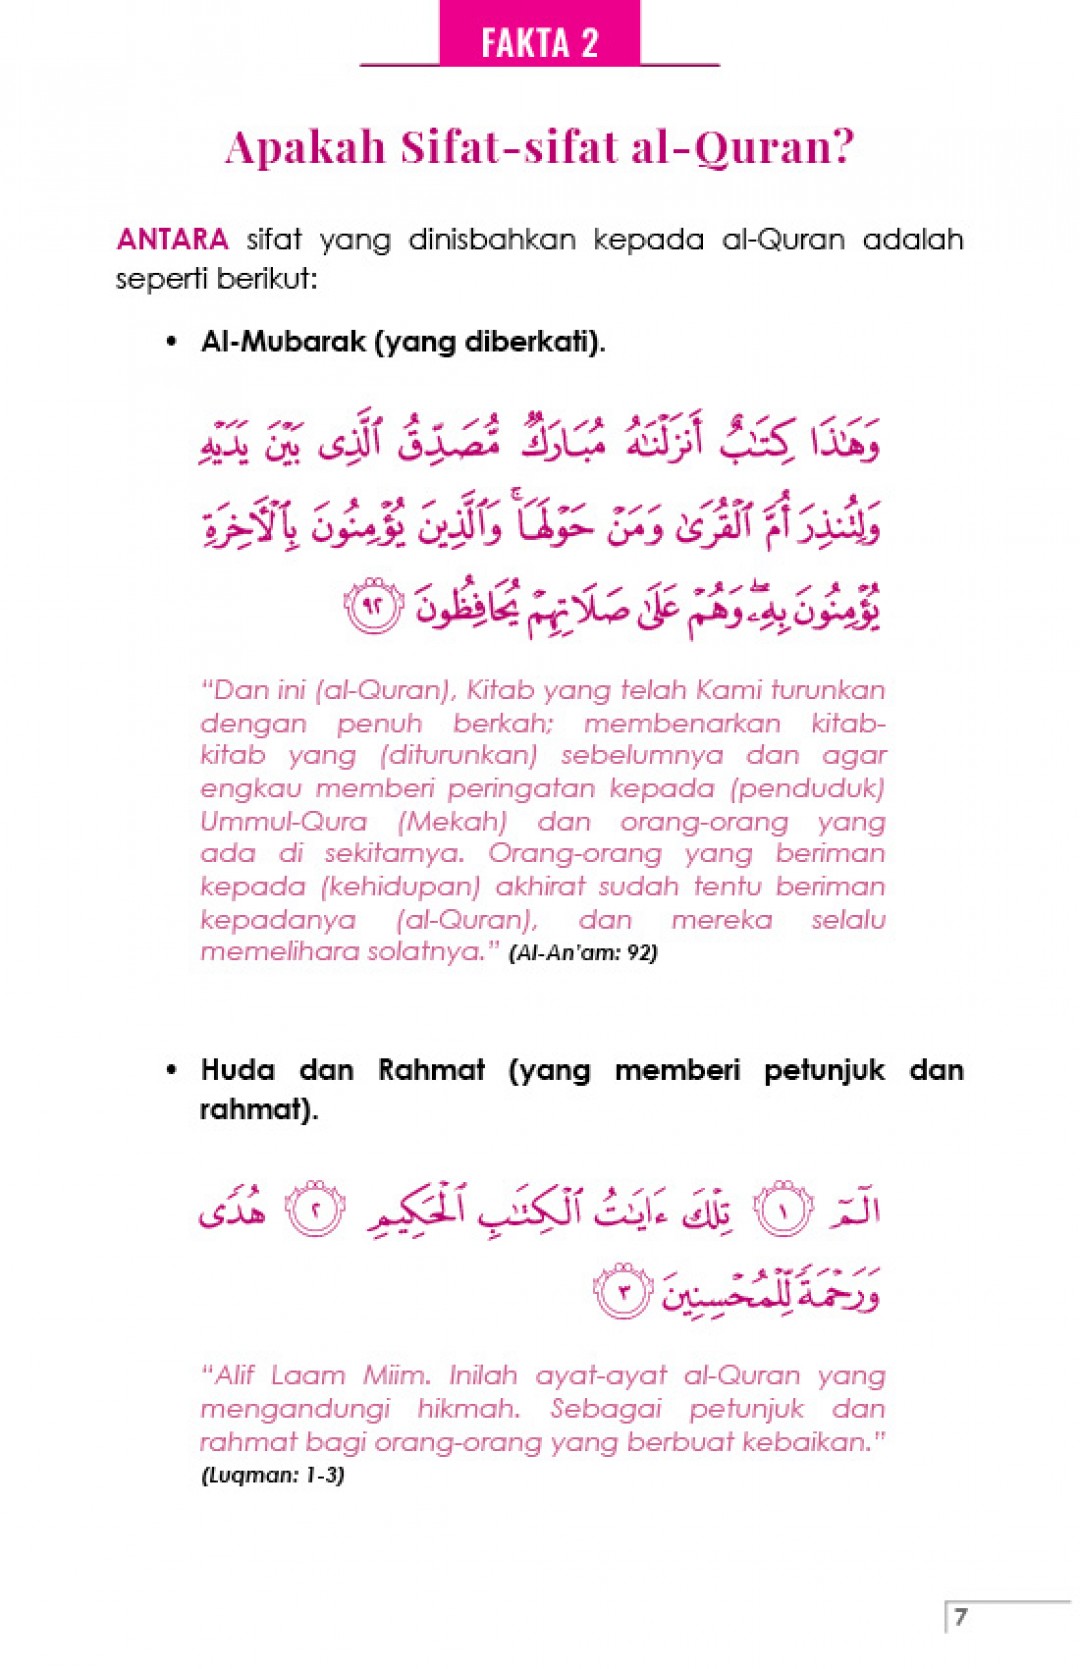 44 Fakta Penting Tentang Al-Quran